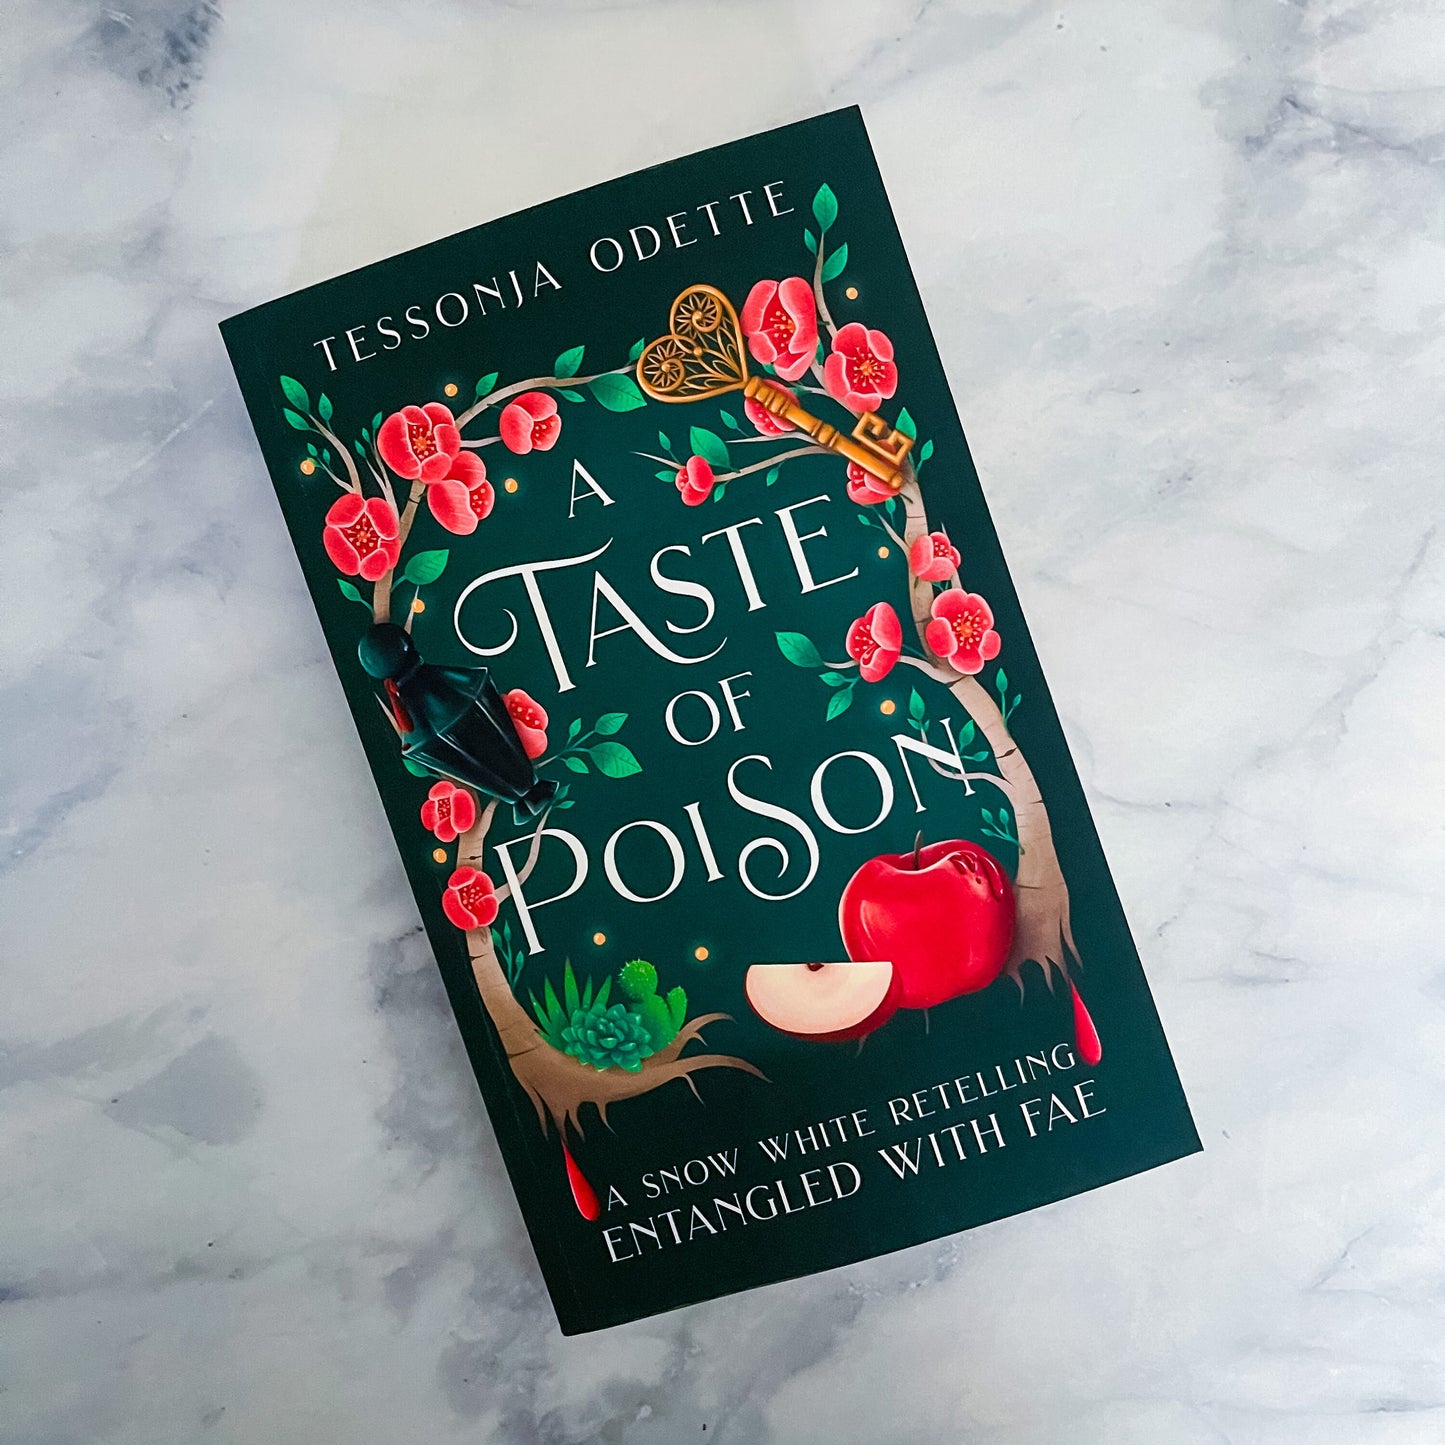 A Taste of Poison (paperback) signed